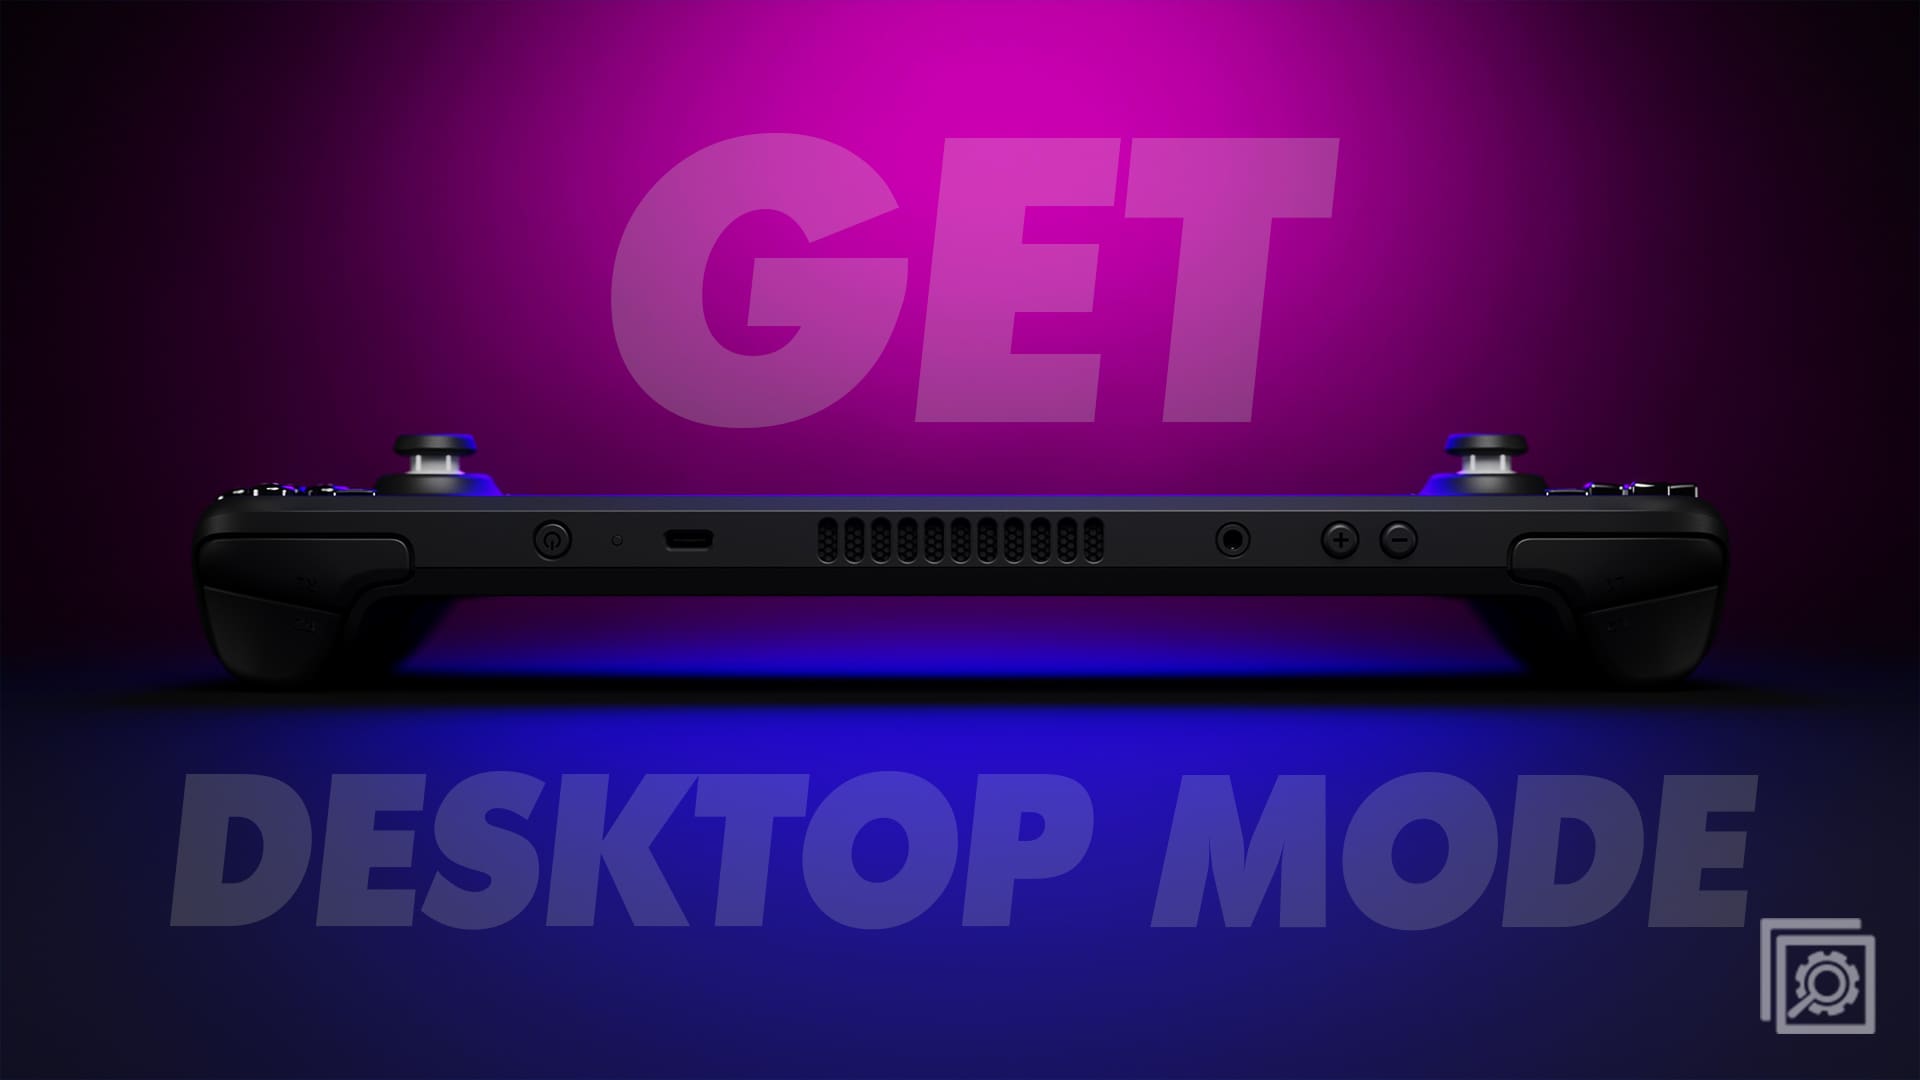 Get Desktop Mode Steam Deck Header